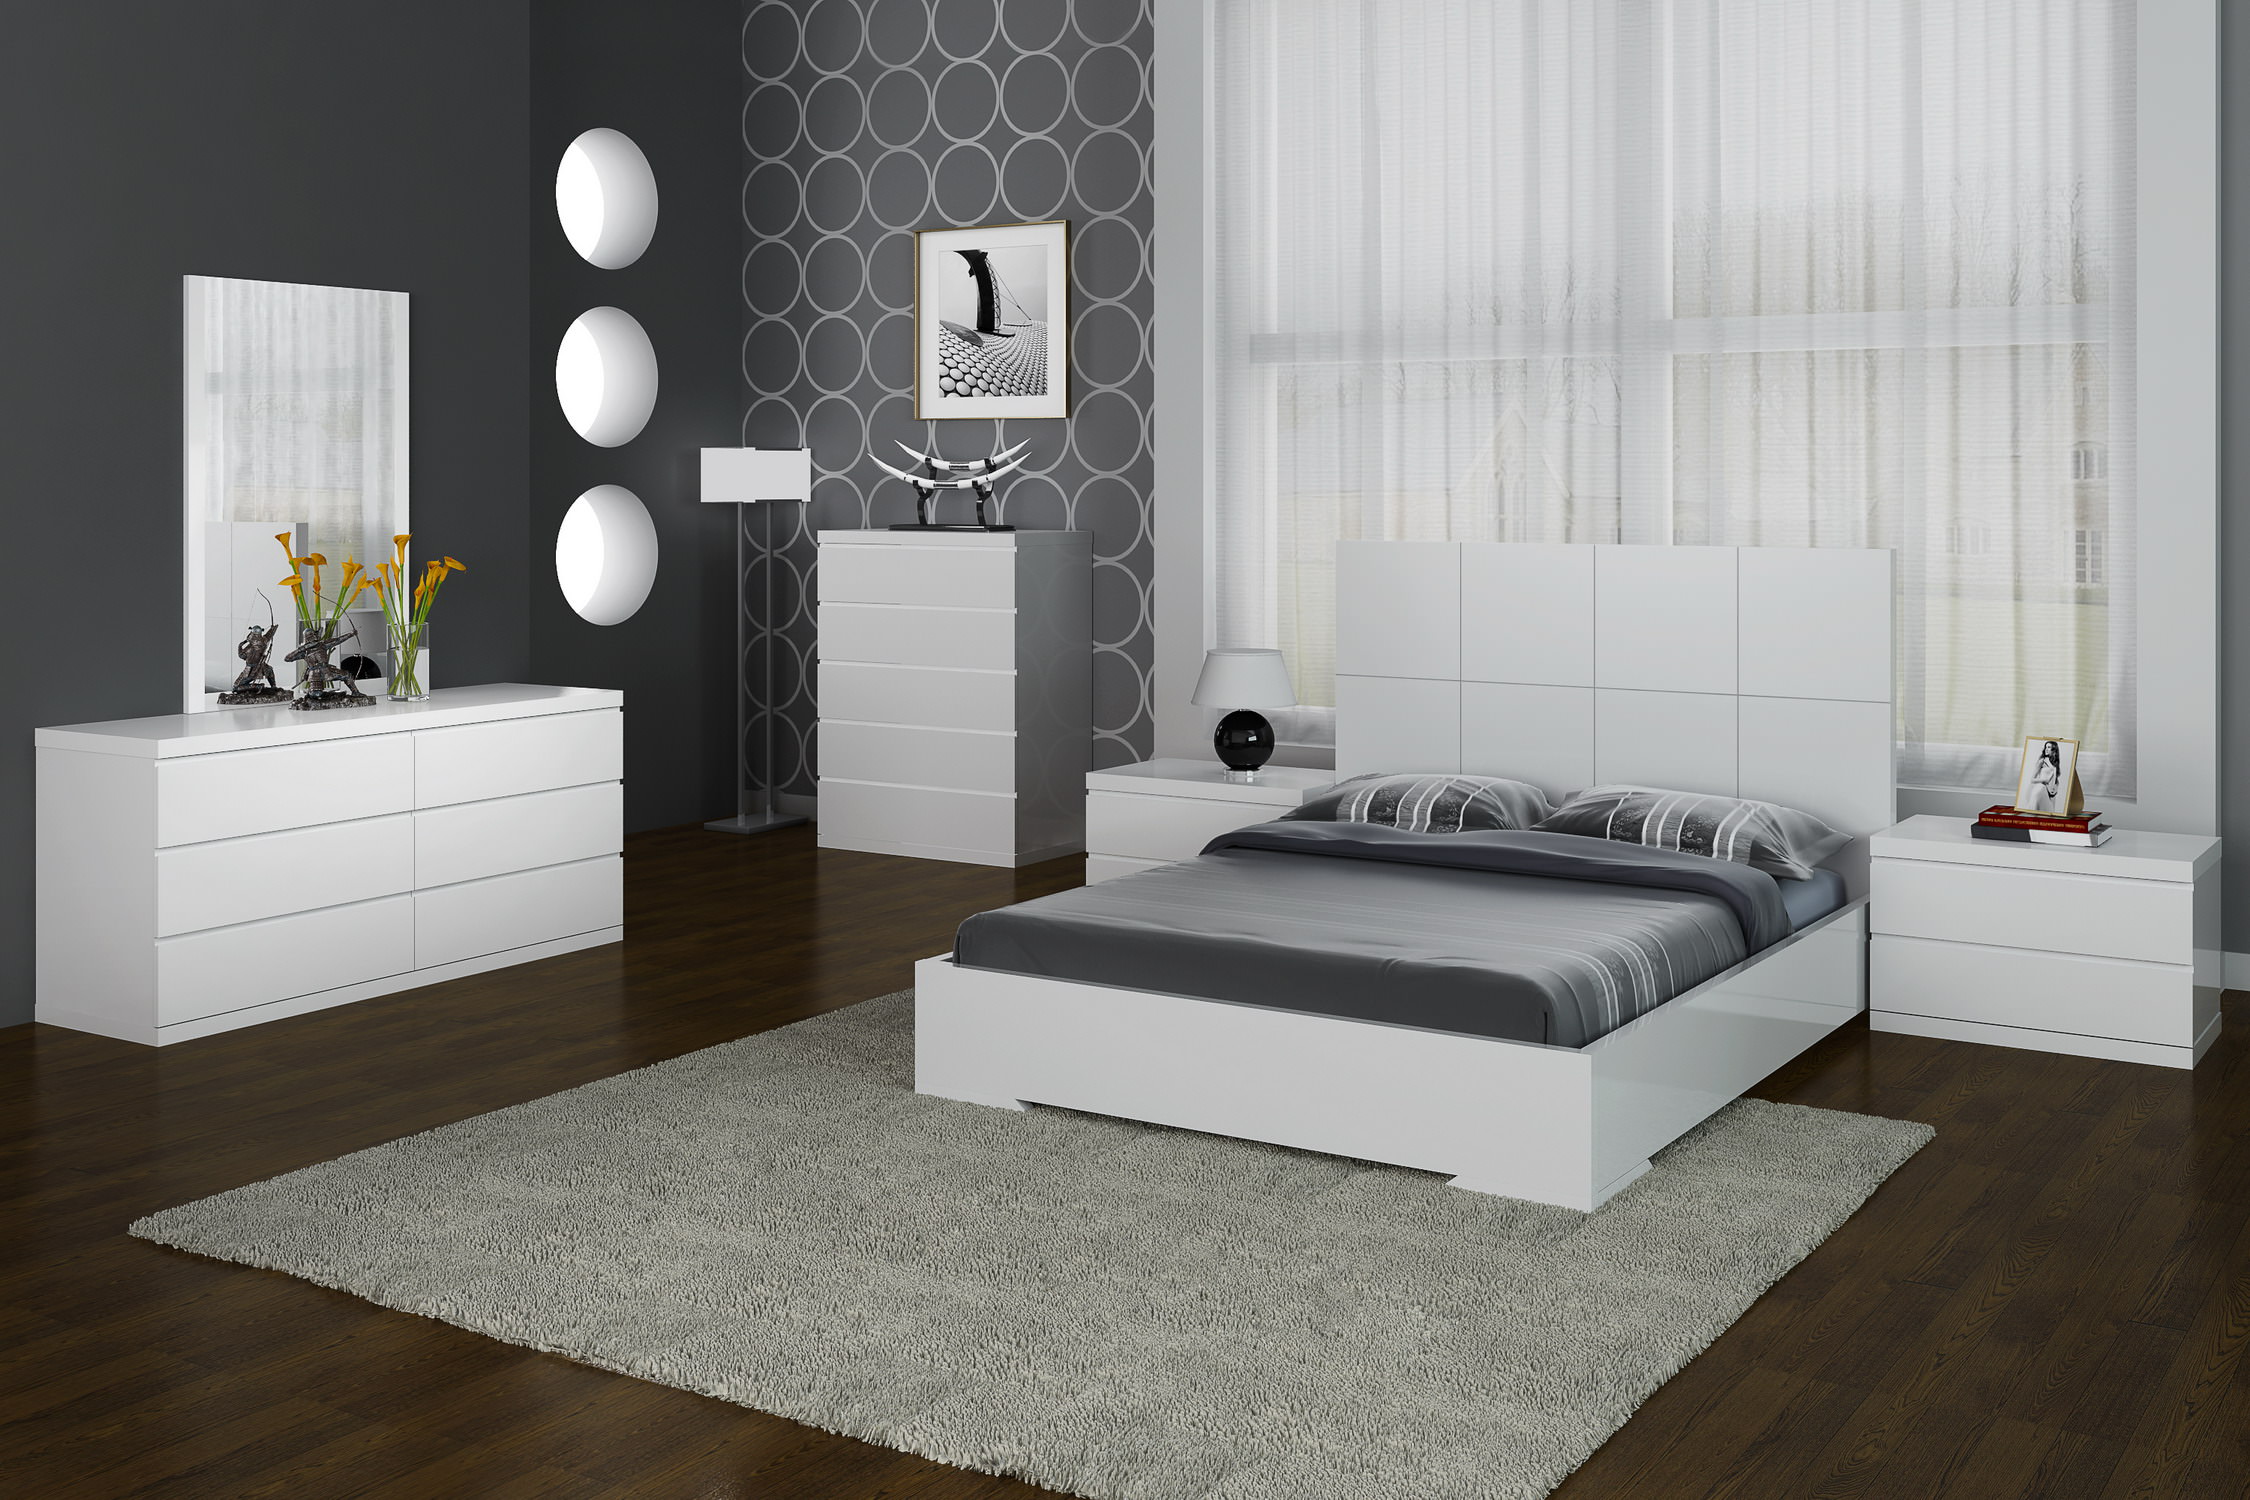 Elite Modern Bedroom Set wit Designer Headboard